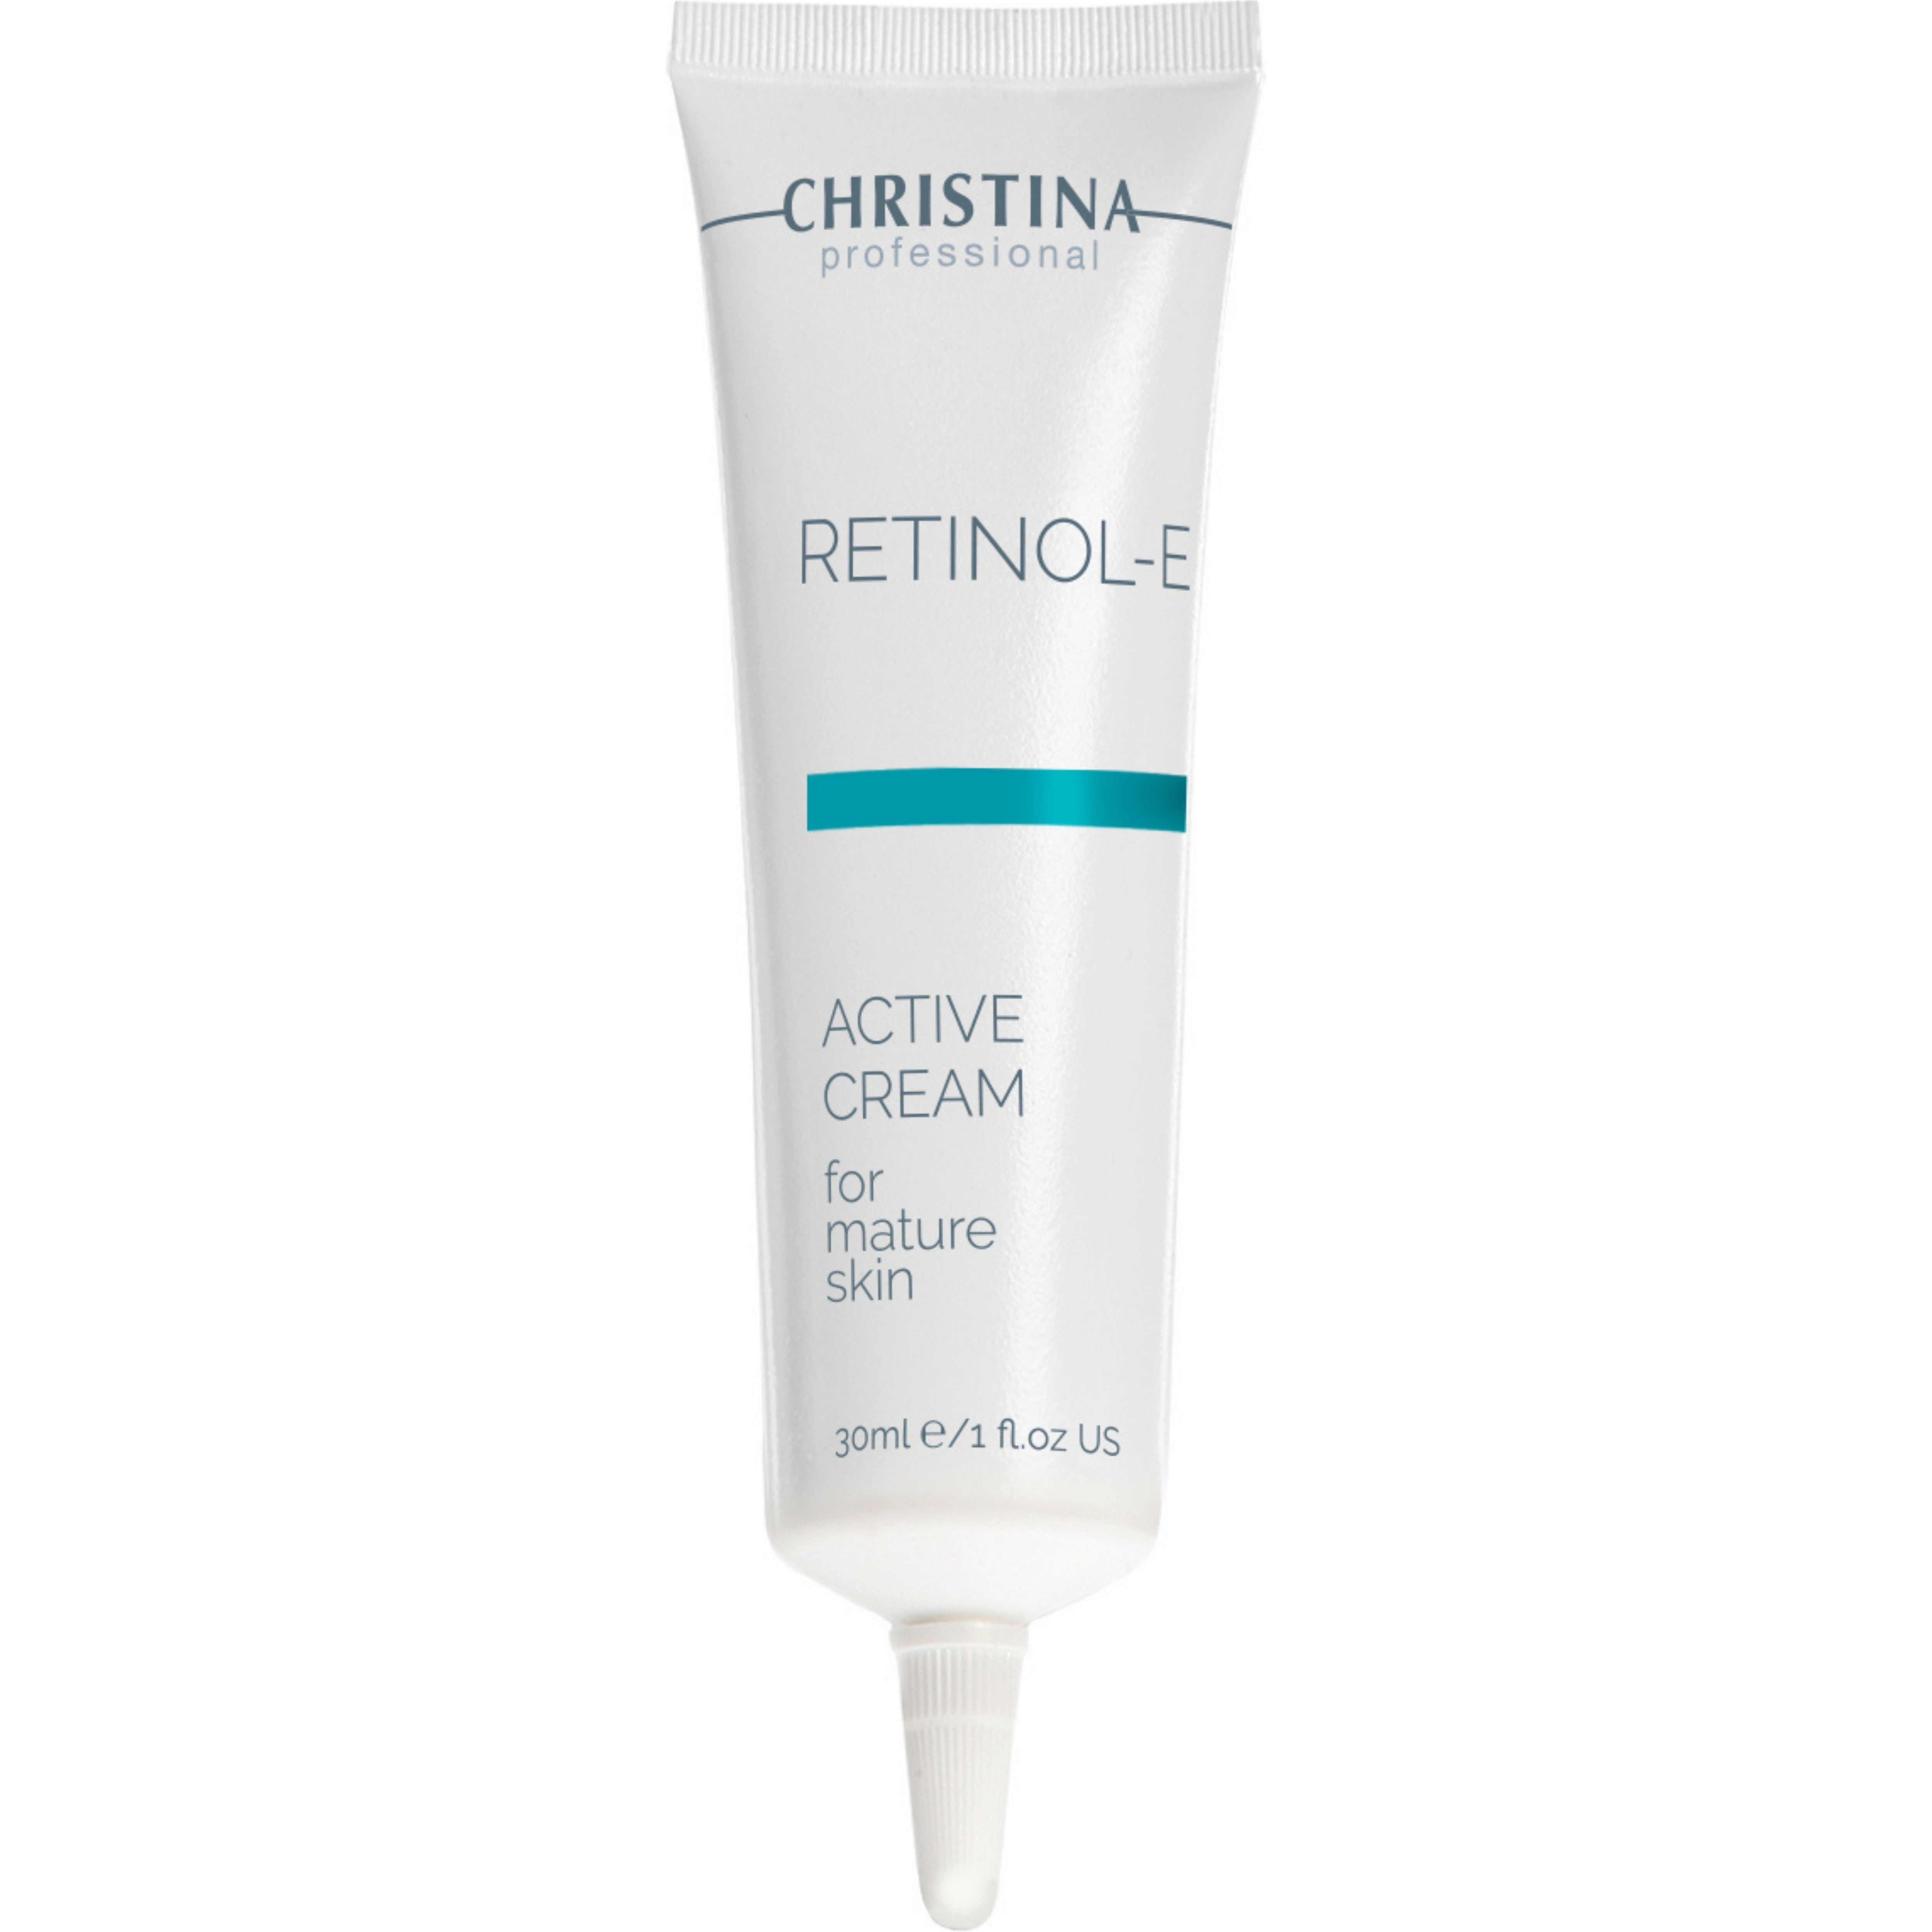 Активный крем для лица с ретинолом Christina Retinol E Active Cream For Mature Skin, 30 мл - фото 1